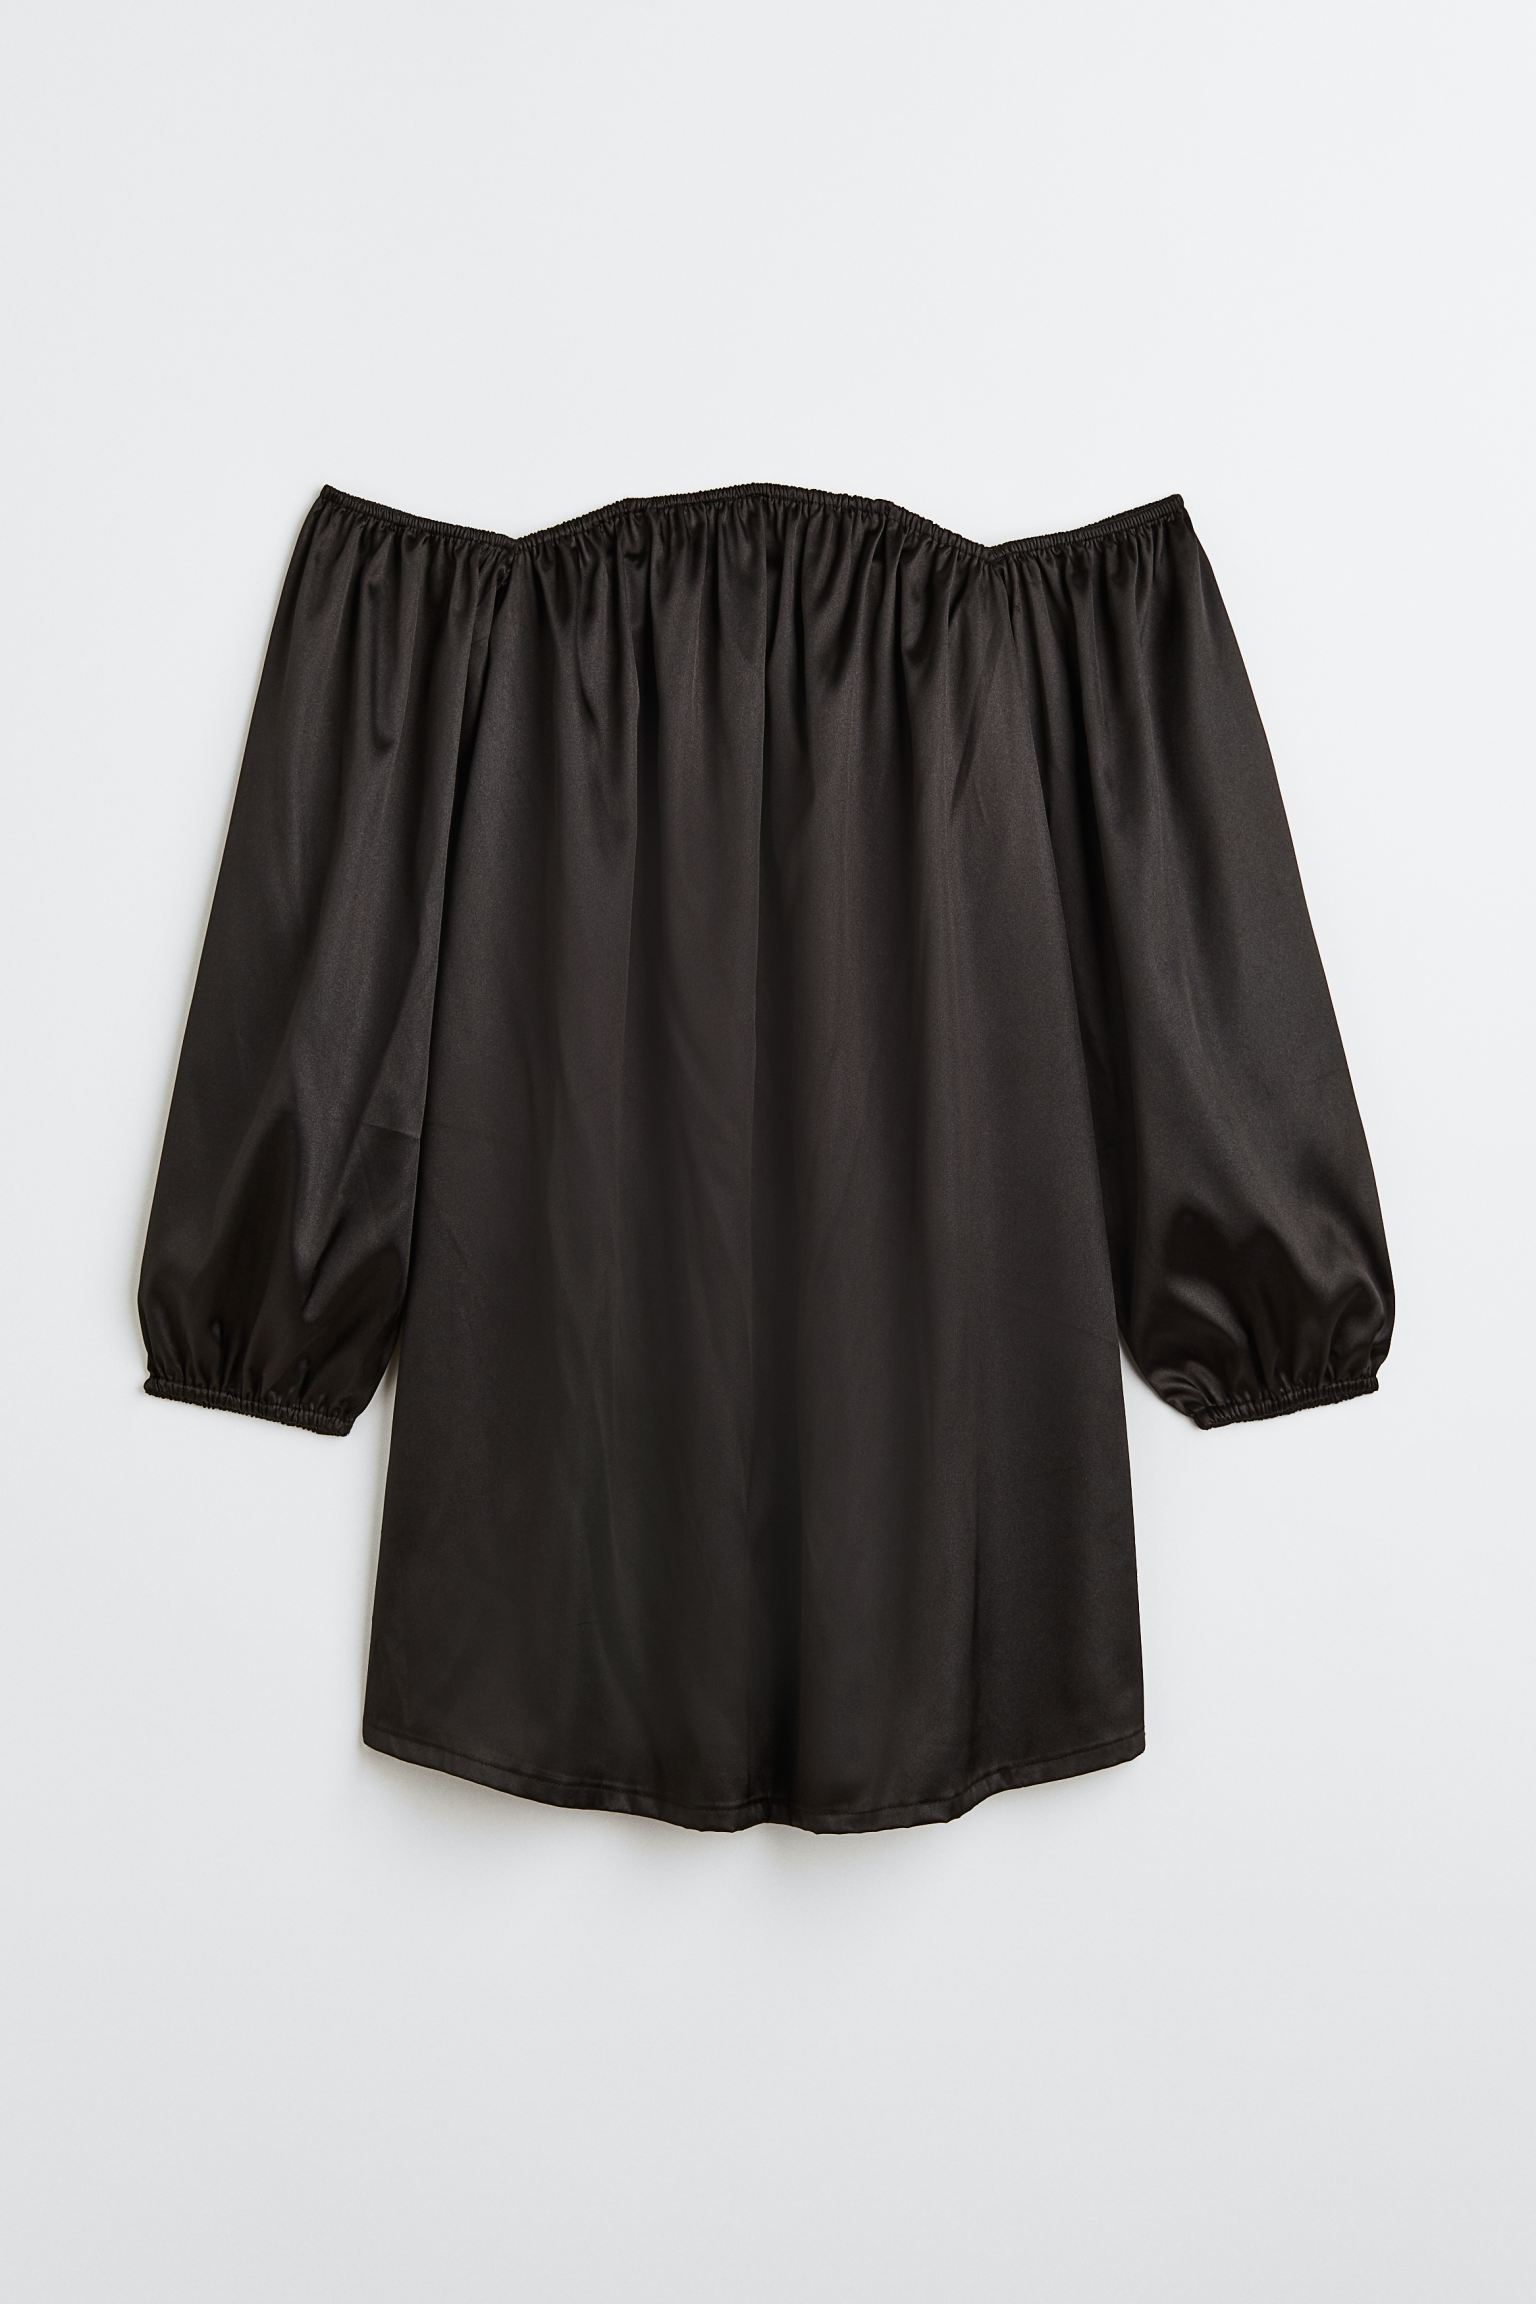 Платье женское H&M 1129262002 черное XS (доставка из-за рубежа)